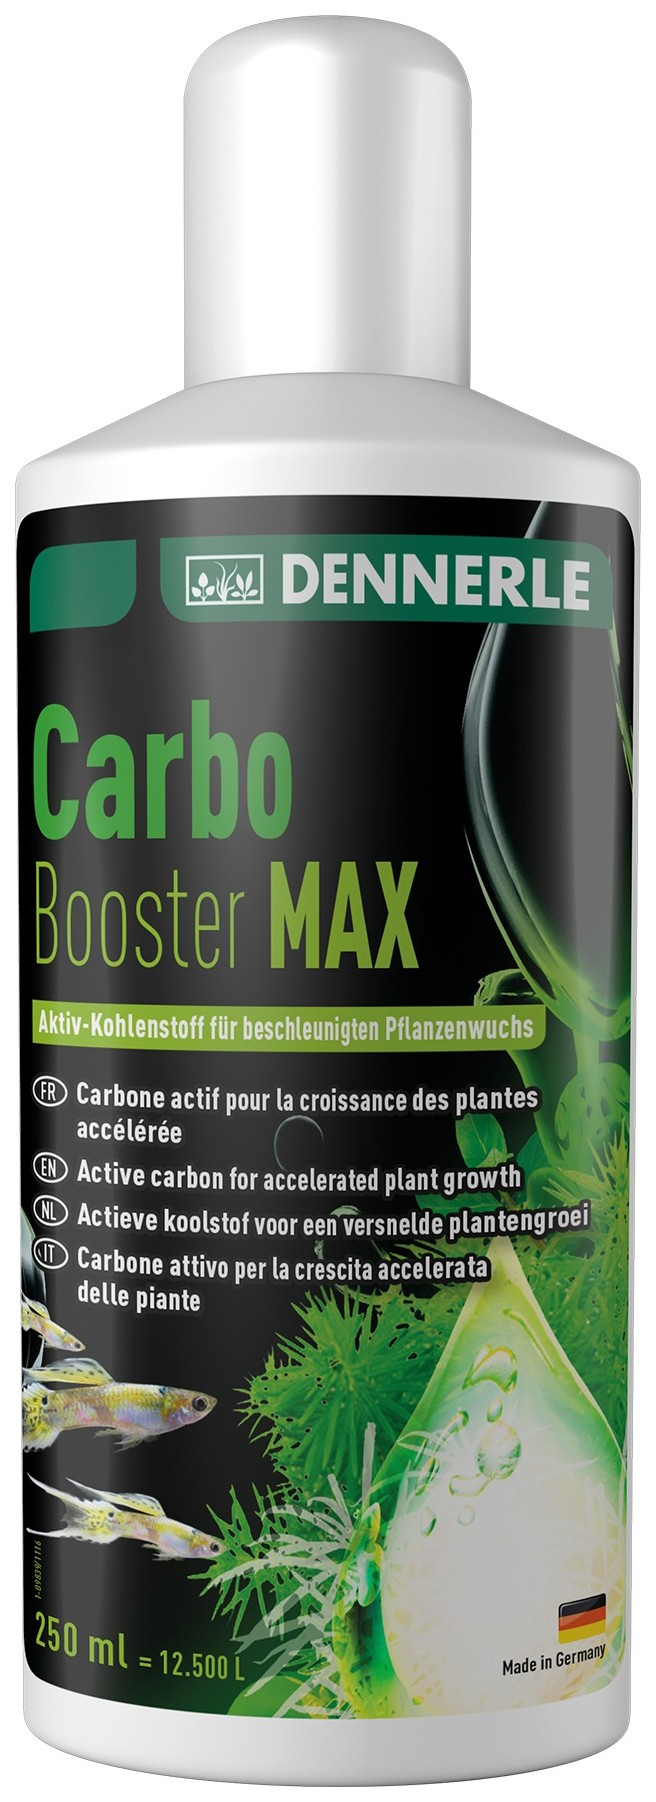 Dennerle Carbo Booster Max Flüssigkohle für Pflanzen